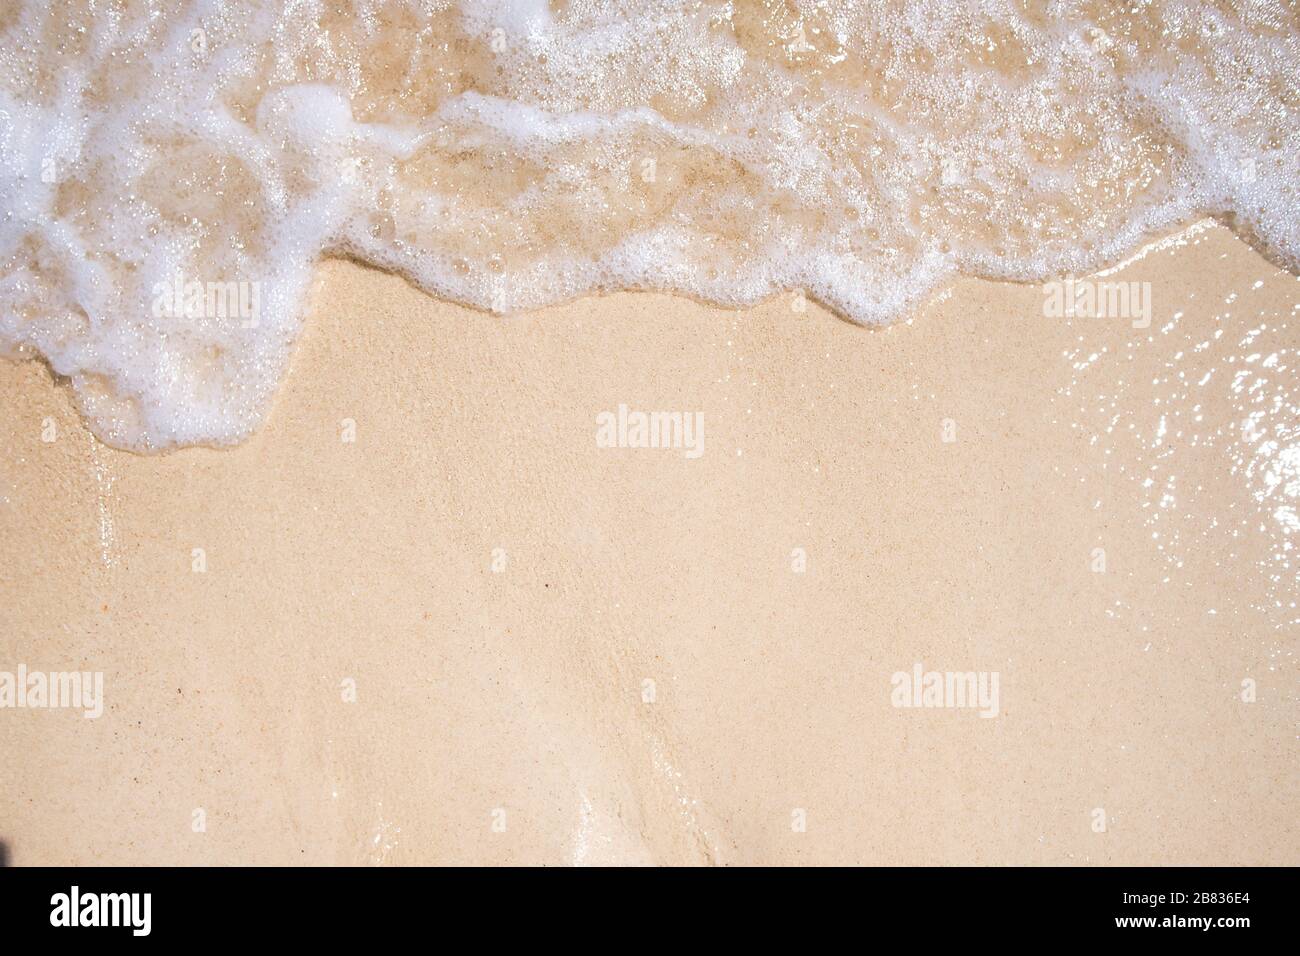 Sanftes blaues Meer am sauberen Sandstrand. Die blaue Meeresweiche Welle auf dem Sand berührt kontinuierlich und schön das Ufer Stockfoto